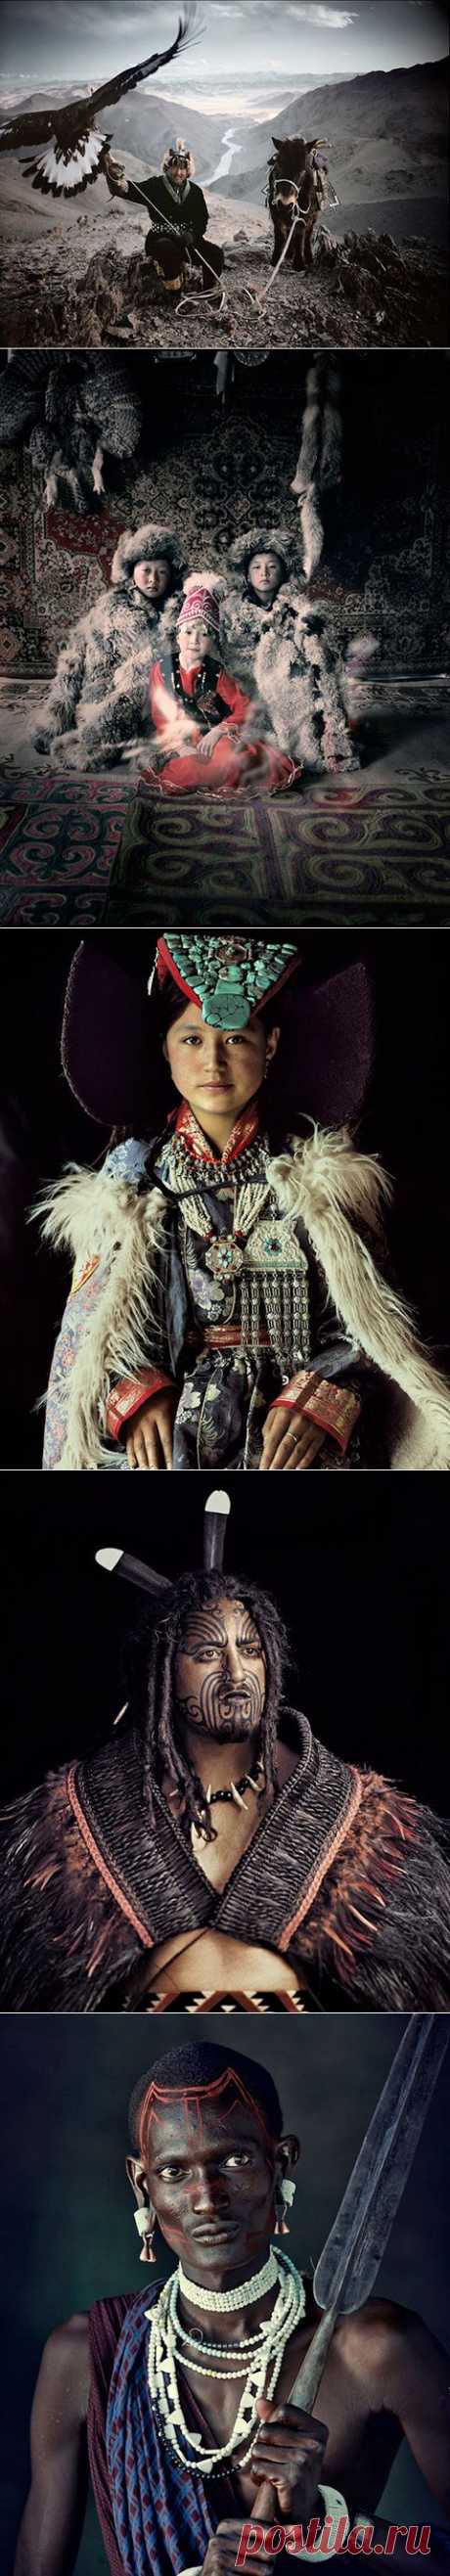 Потрясающие портреты изолированных племен в серии «Прежде, чем они умрут» от Джимми Нельсона - Пятница.ком